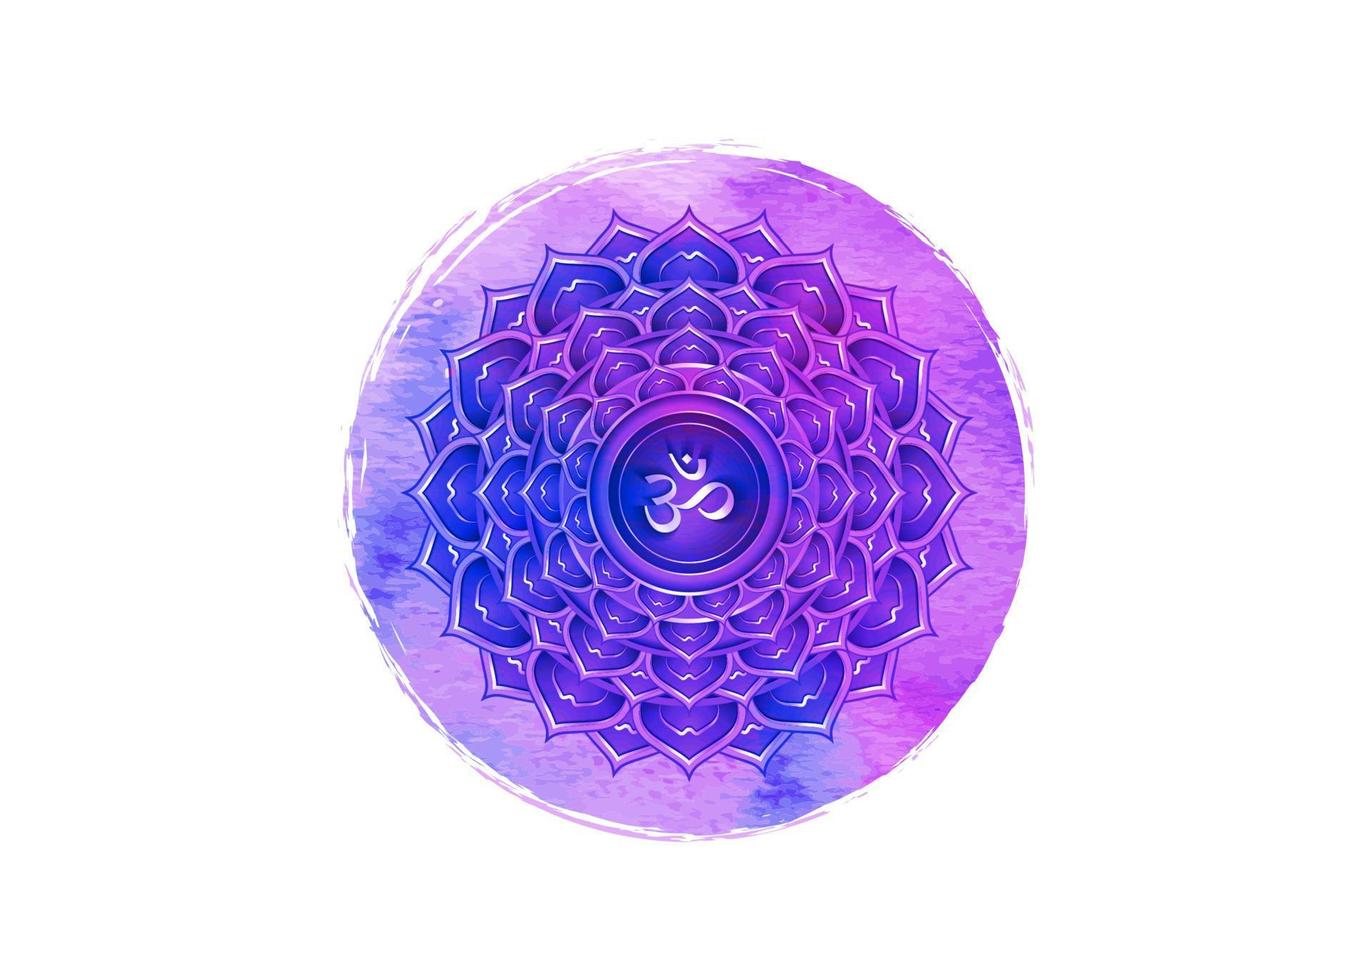 Plantilla de logotipo de séptimo chakra sahasrara. símbolo del chakra de la corona, meditación del signo sacro de loto púrpura acuarela, icono de mandala redondo de yoga, símbolo om en el centro, vector aislado sobre fondo blanco